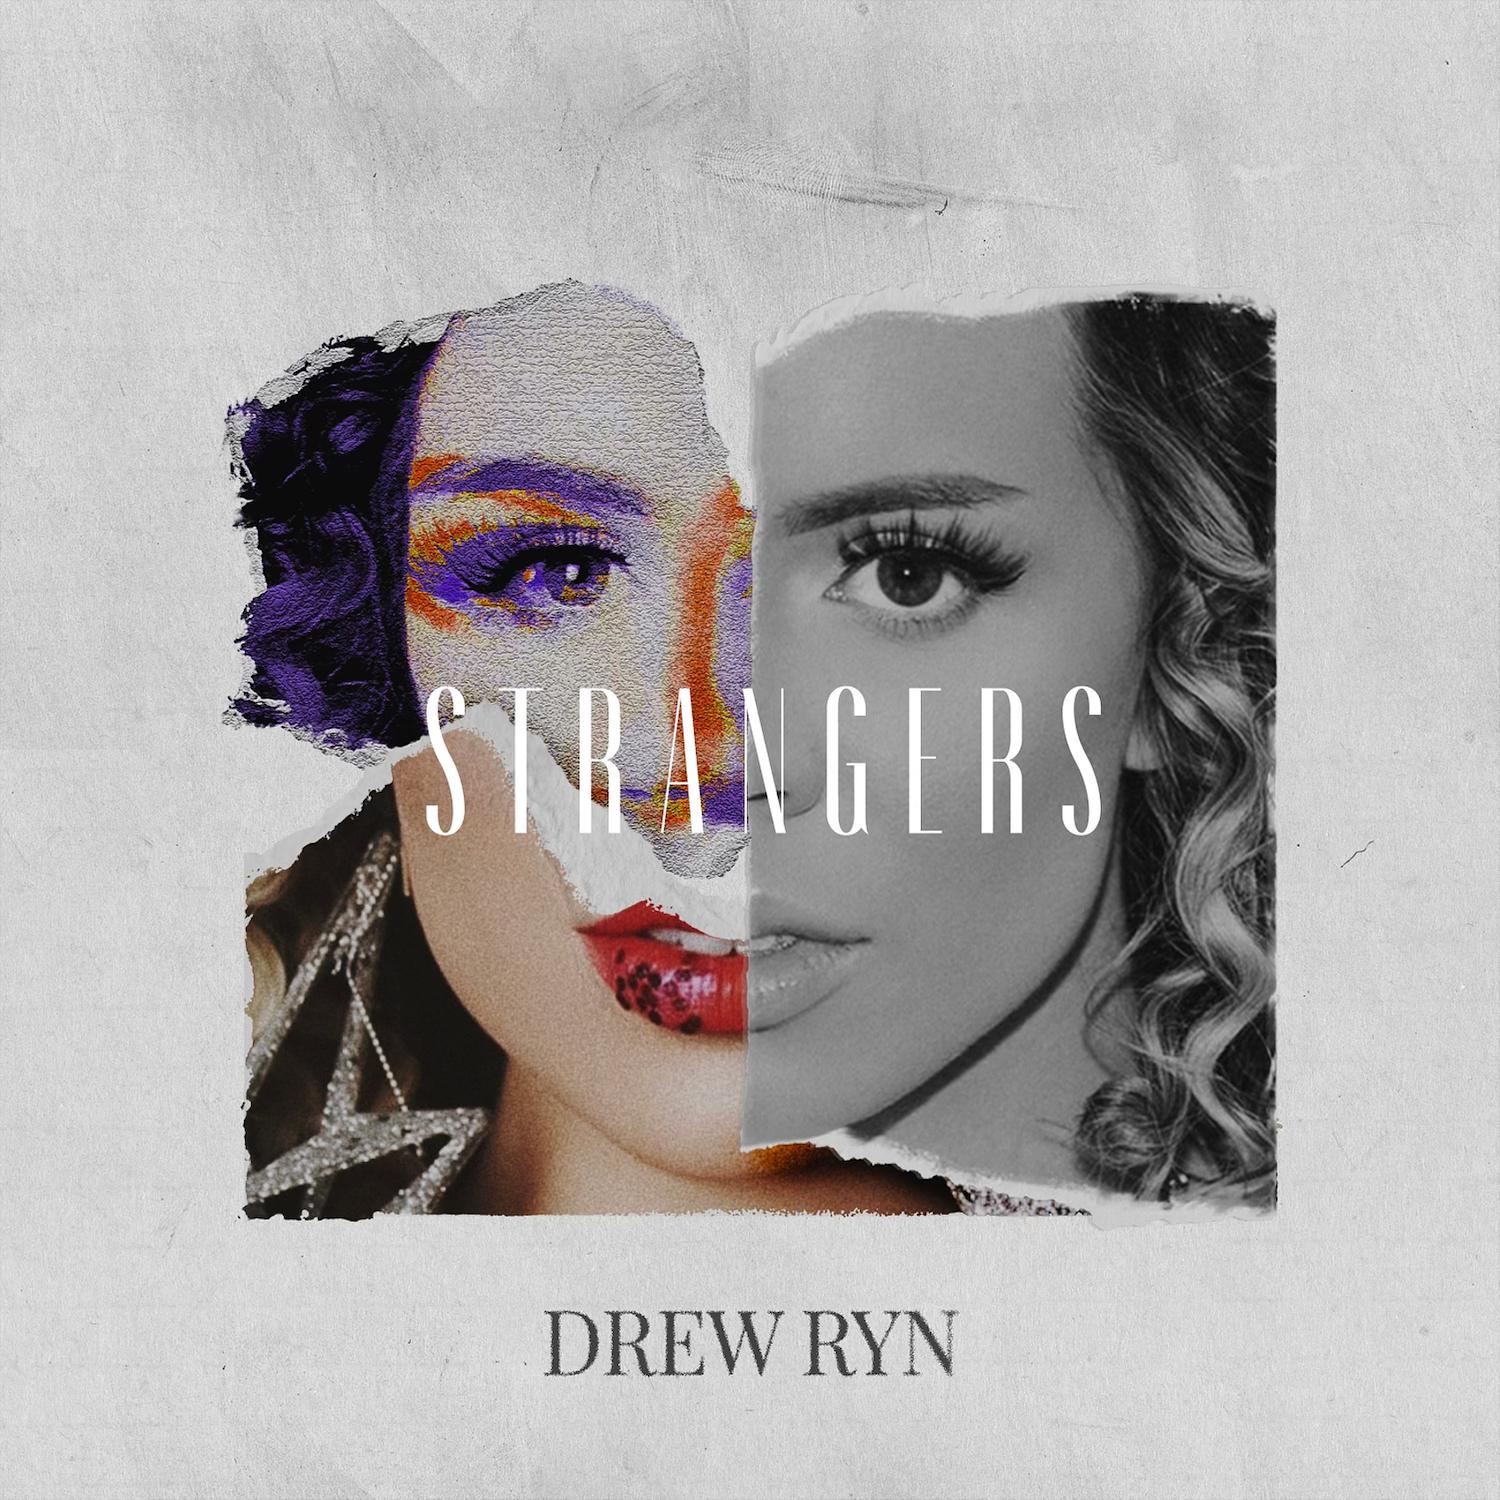 Drew Ryn - Strangers